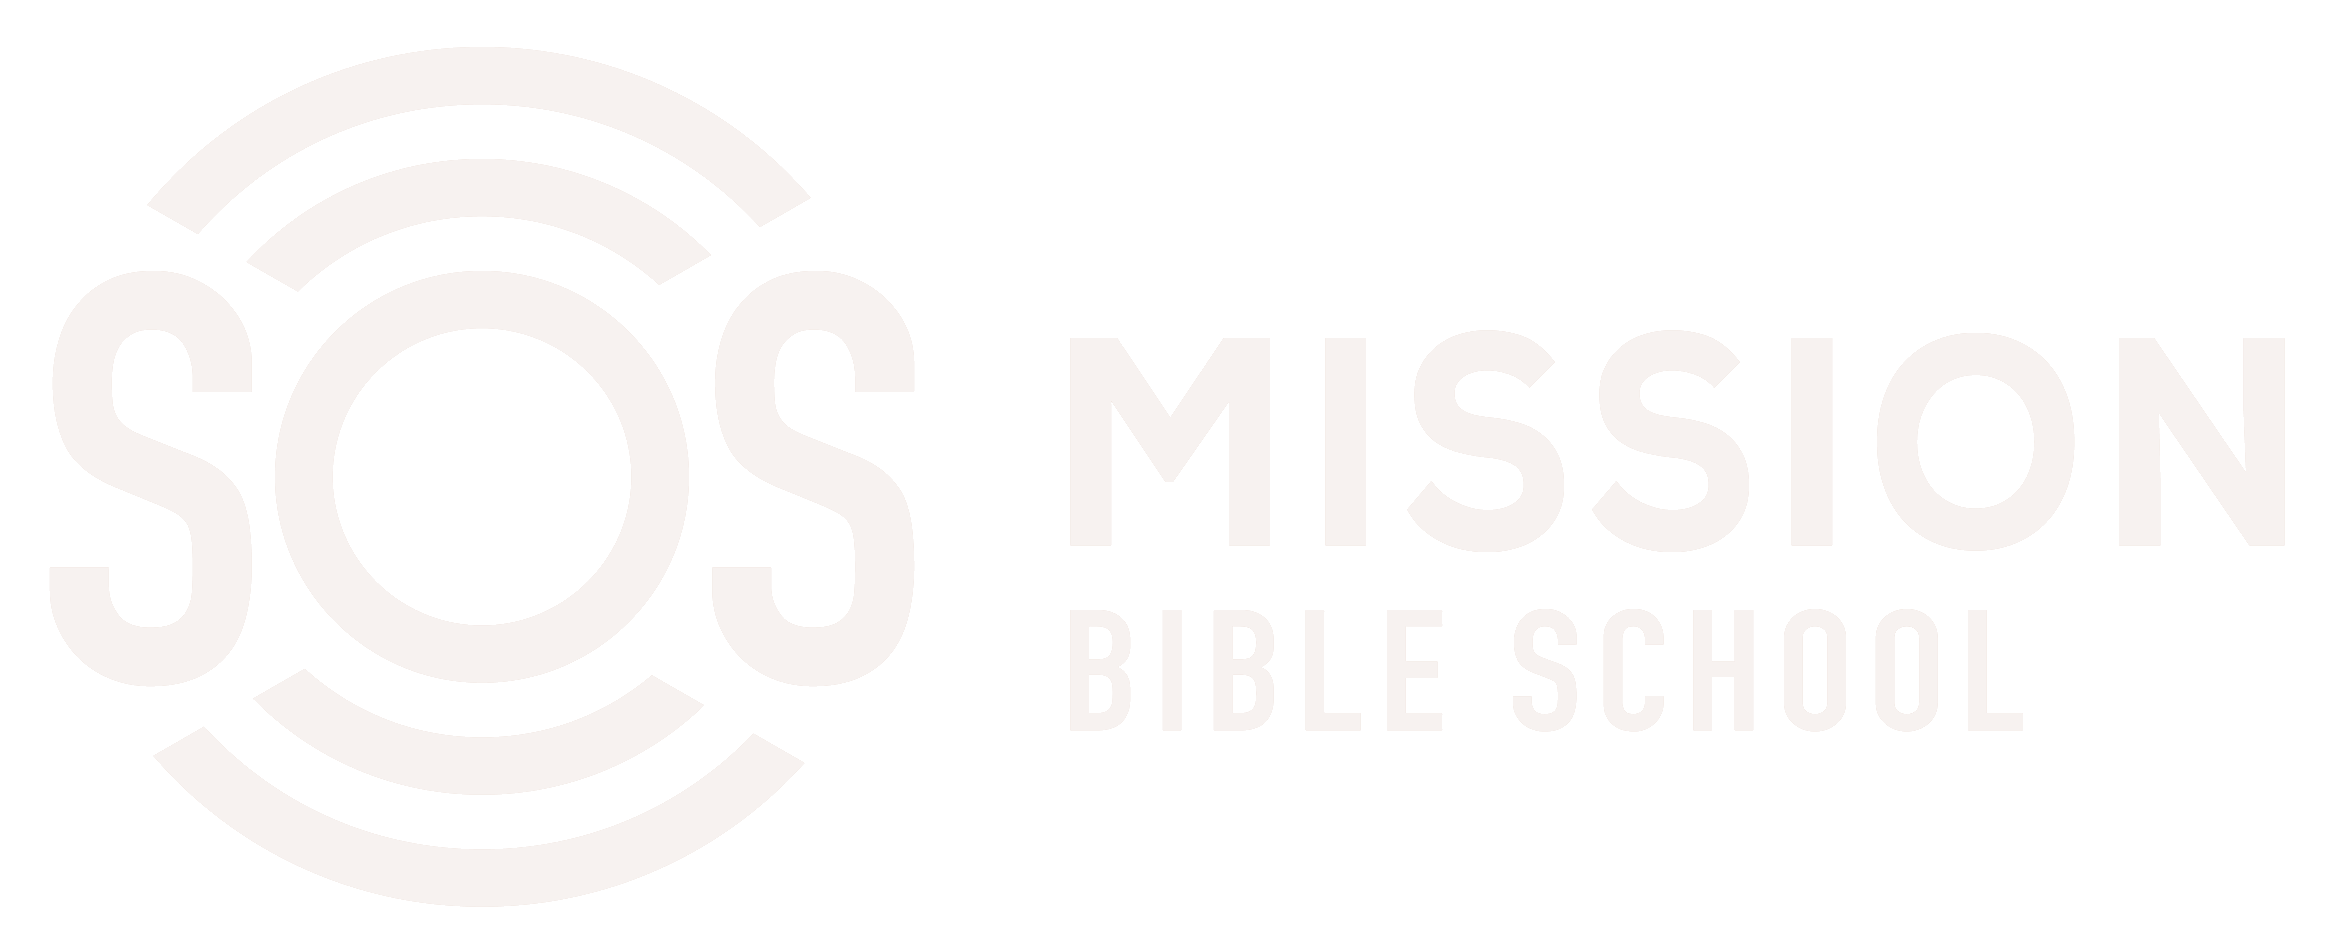 SOS MBS Kilgoris